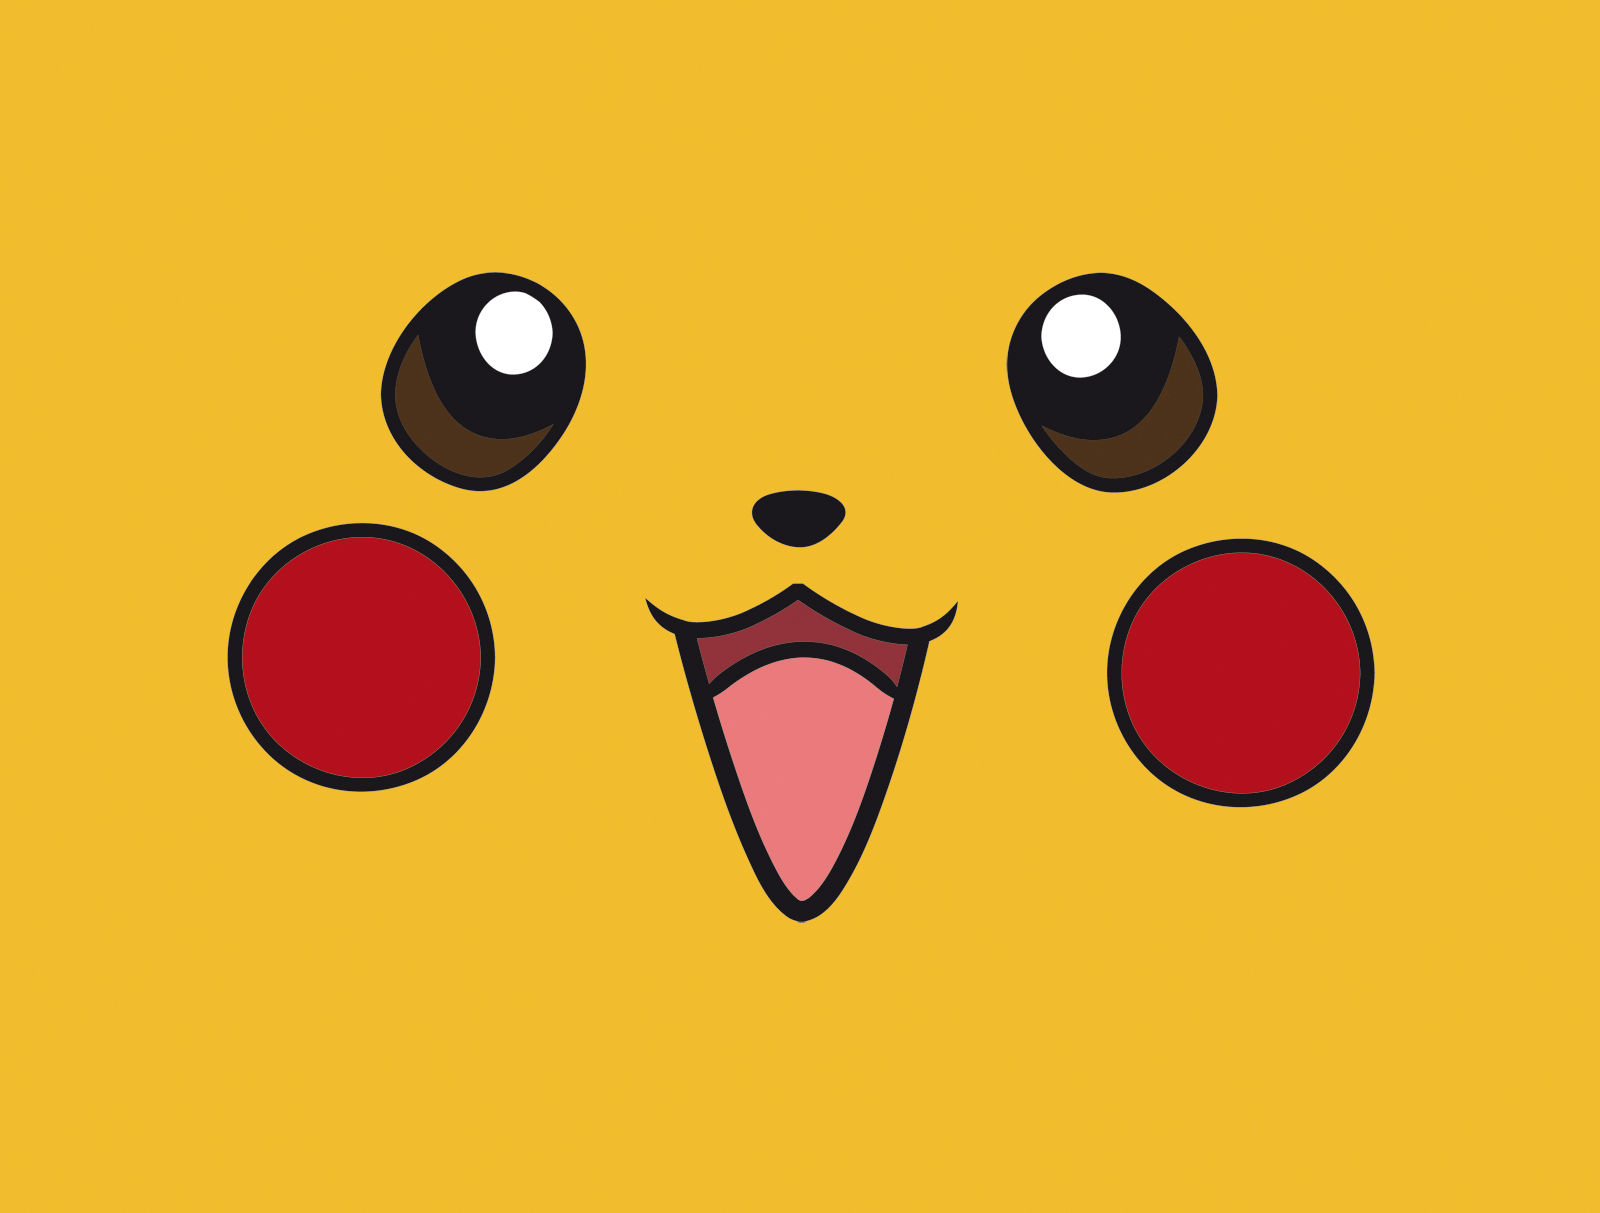 Pikachu Face Wallpaper By Waddledoo On Deviantart